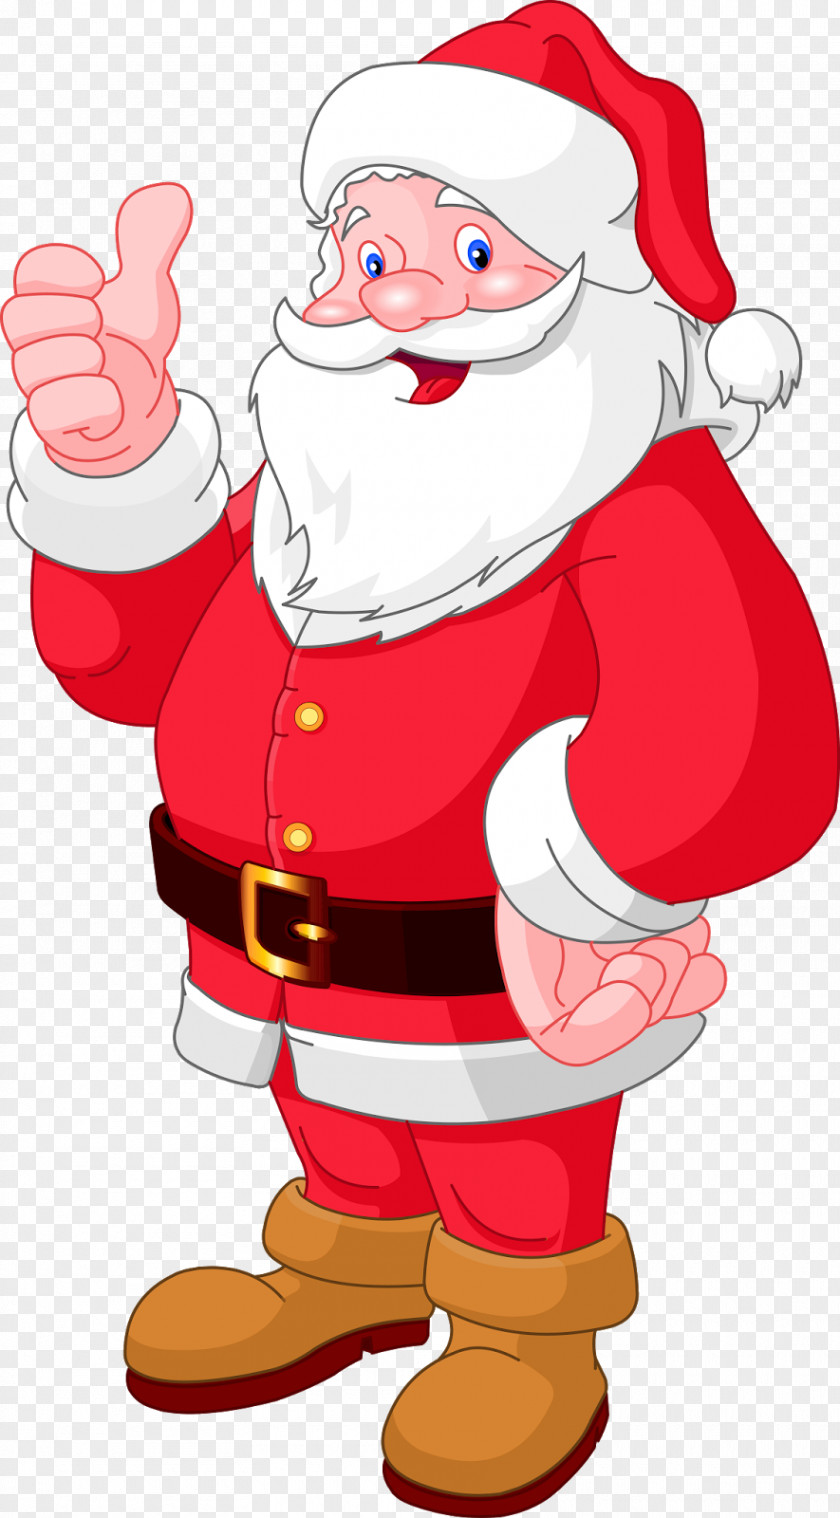 Santa Christmas Claus Clip Art PNG